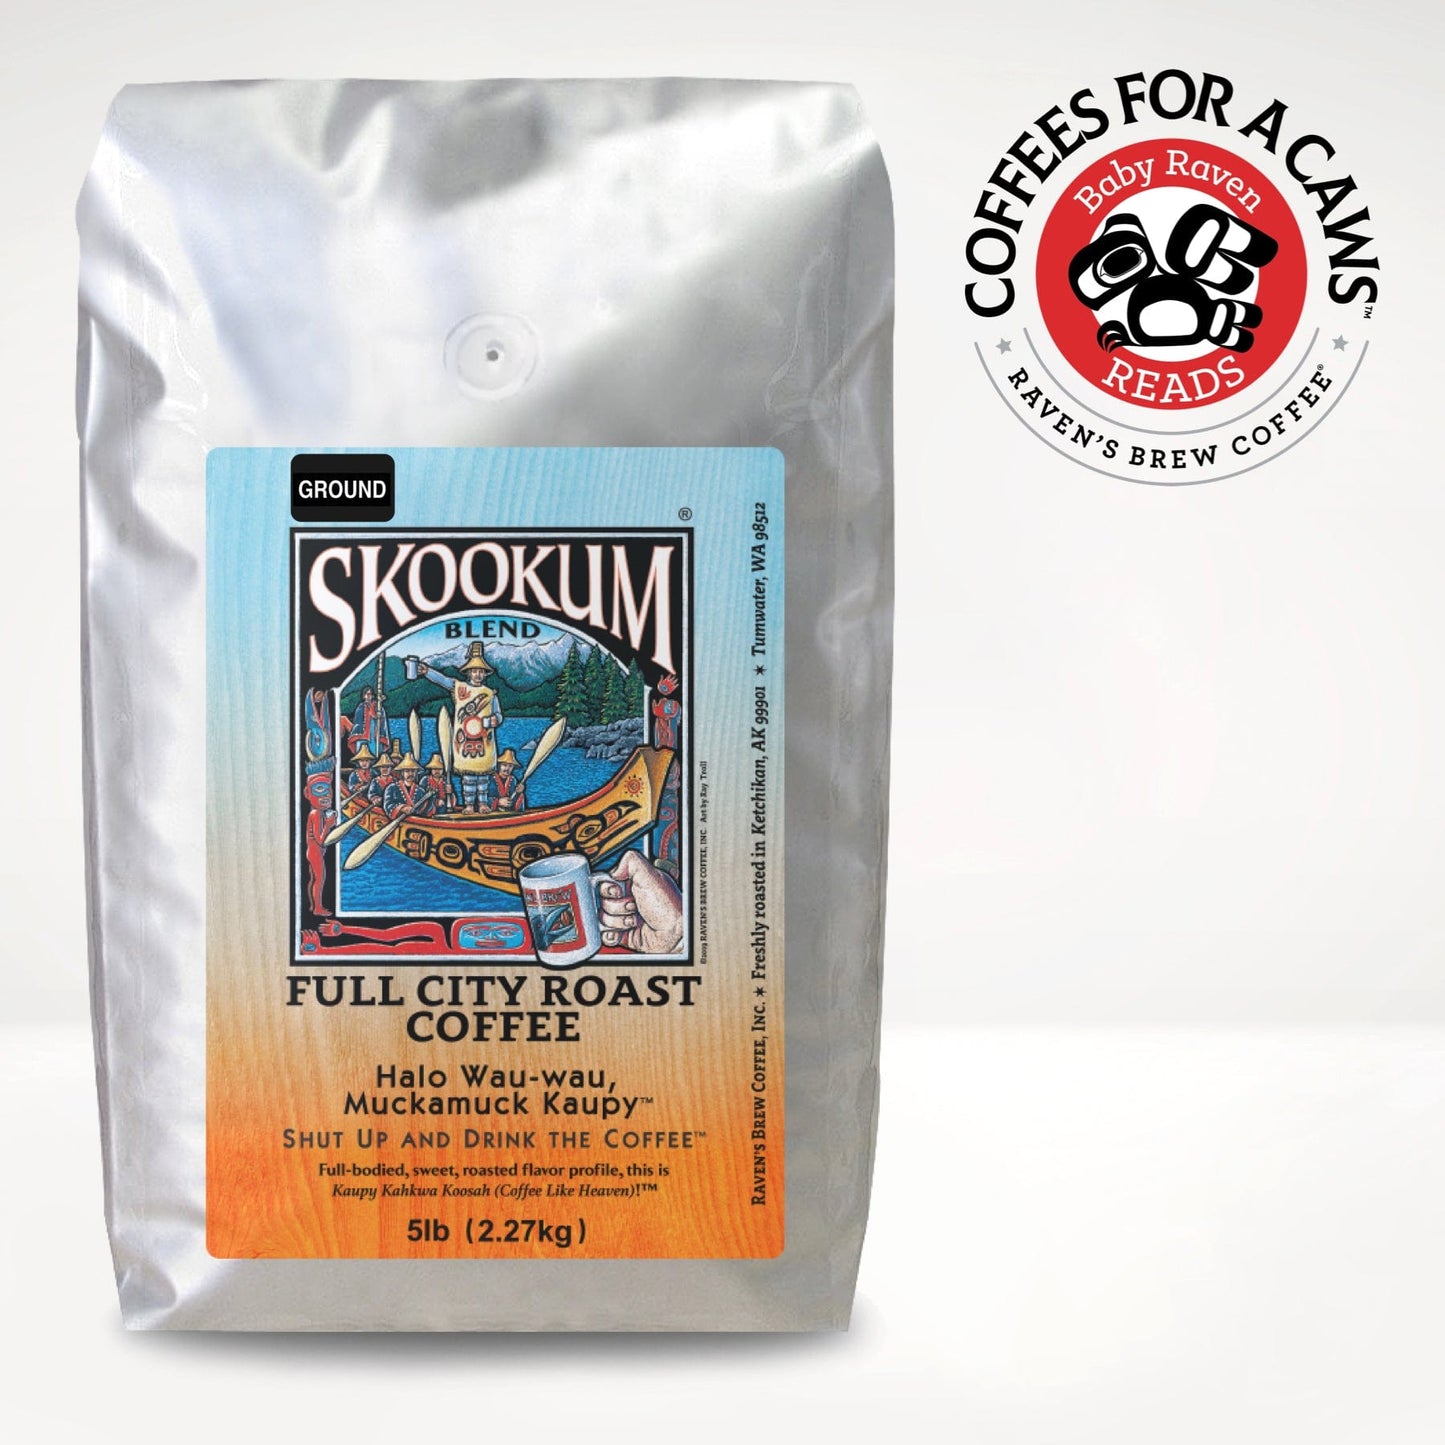 5lb Ground Skookum® Blend Full City Roast Coffee